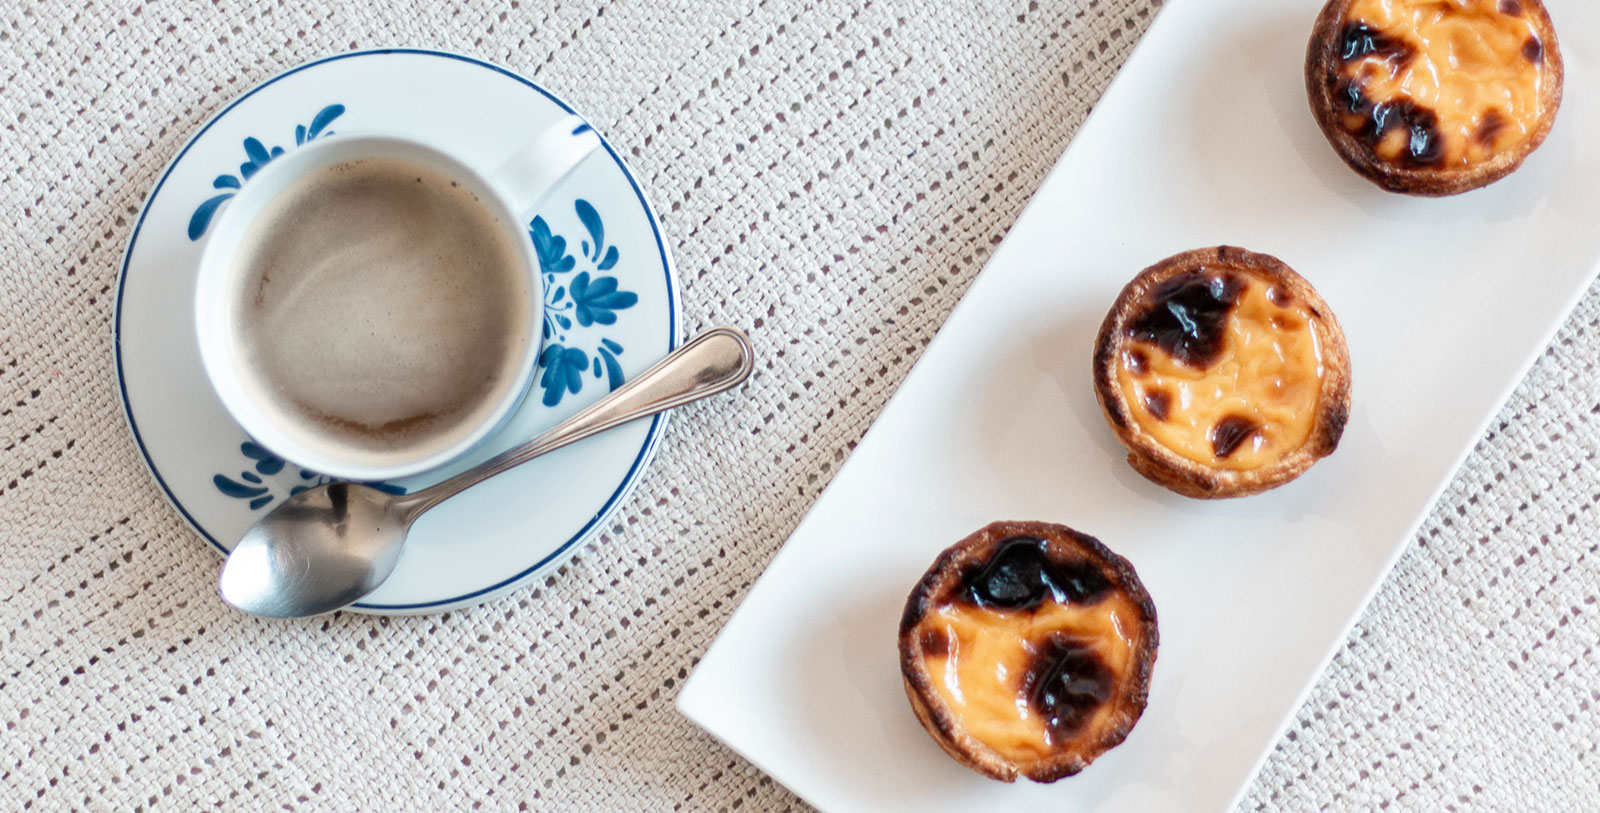 Taste the famous Pastel de Belém, one of the Seven Wonders of Portuguese Gastronomy.